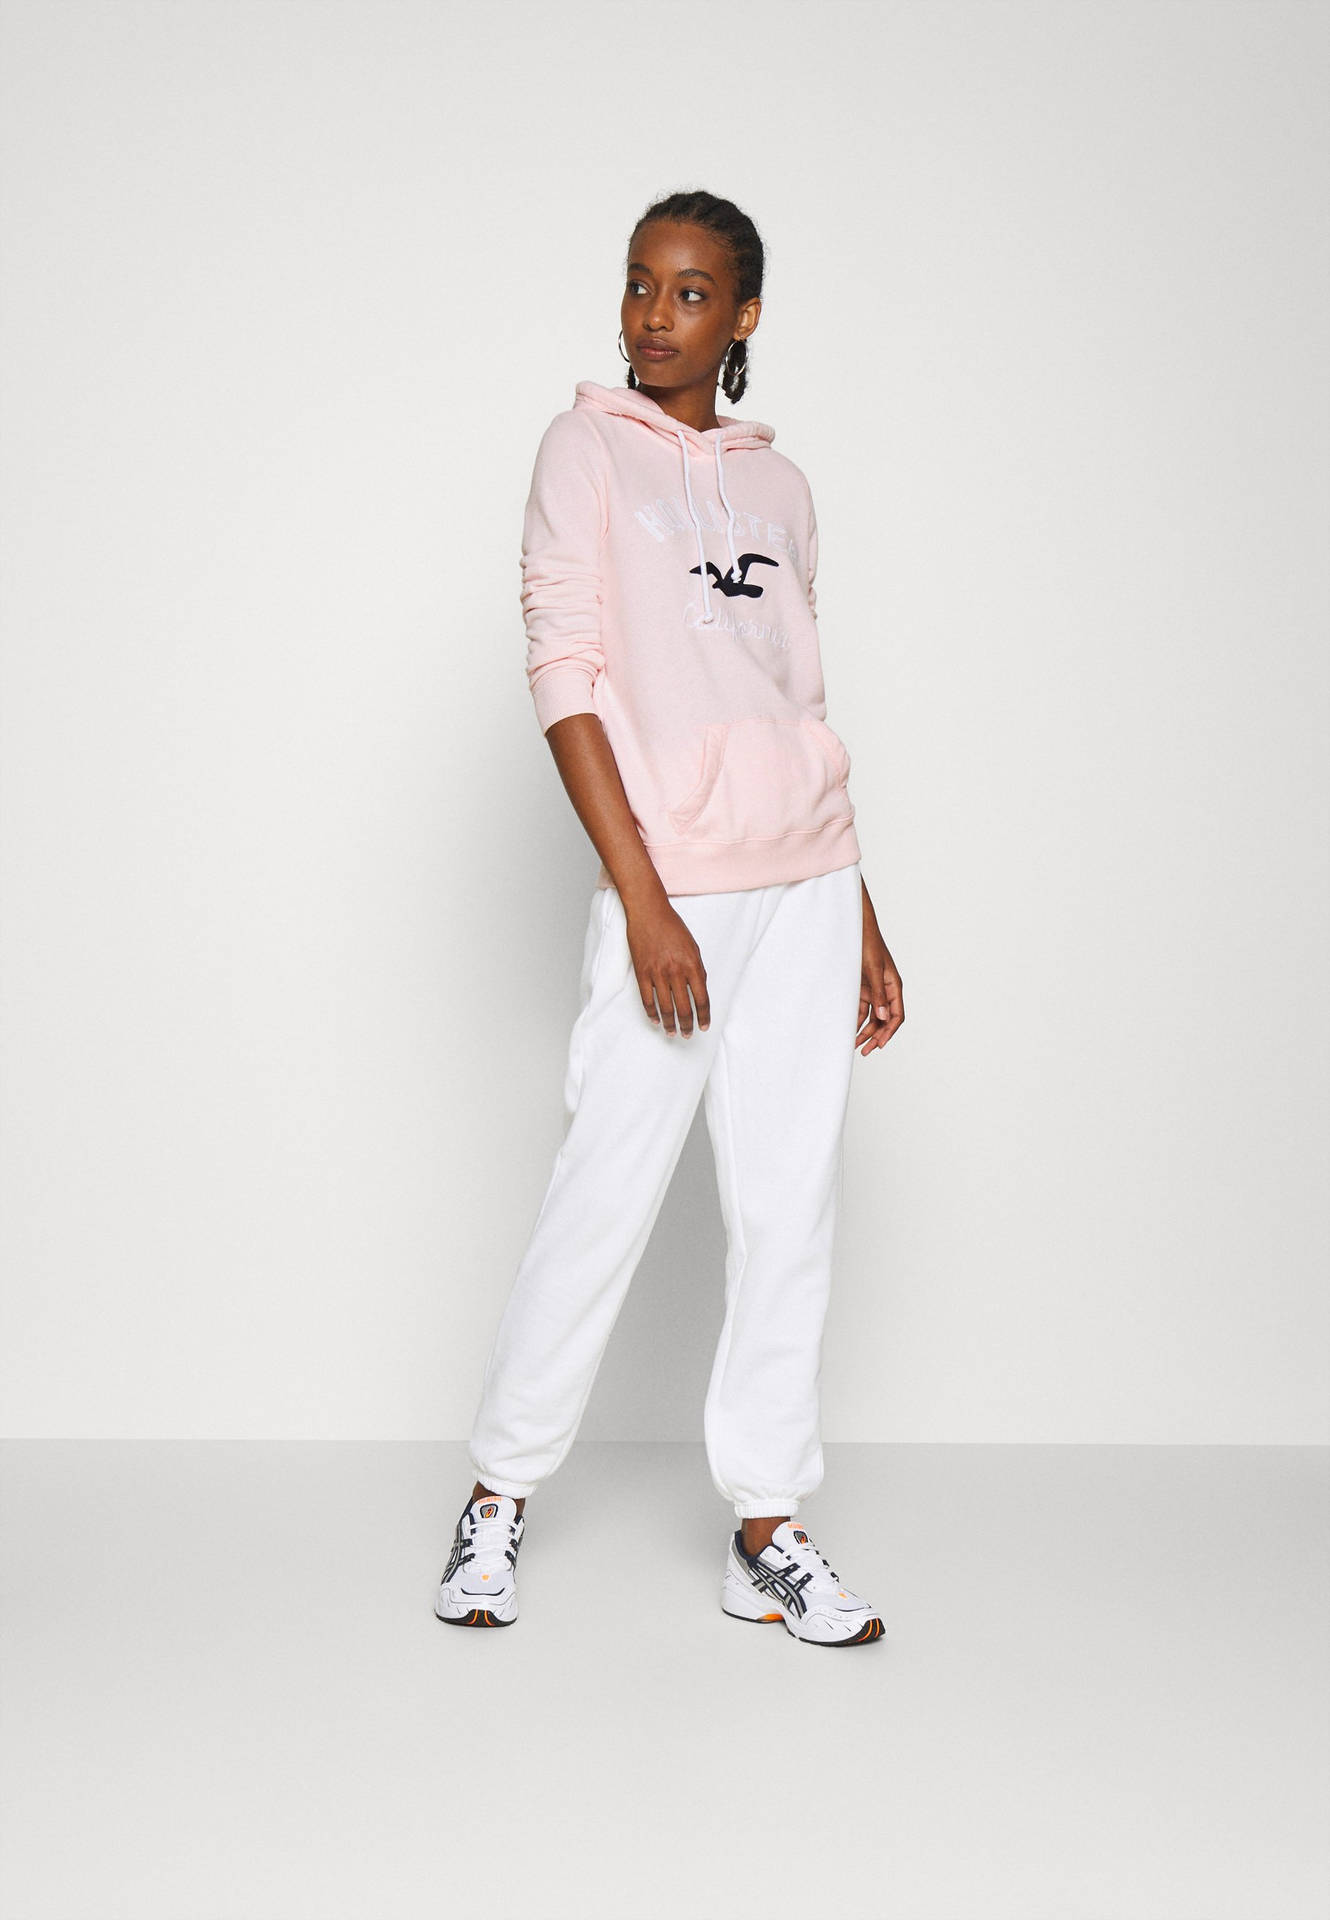 Model In Pink Hollister Jacket Background